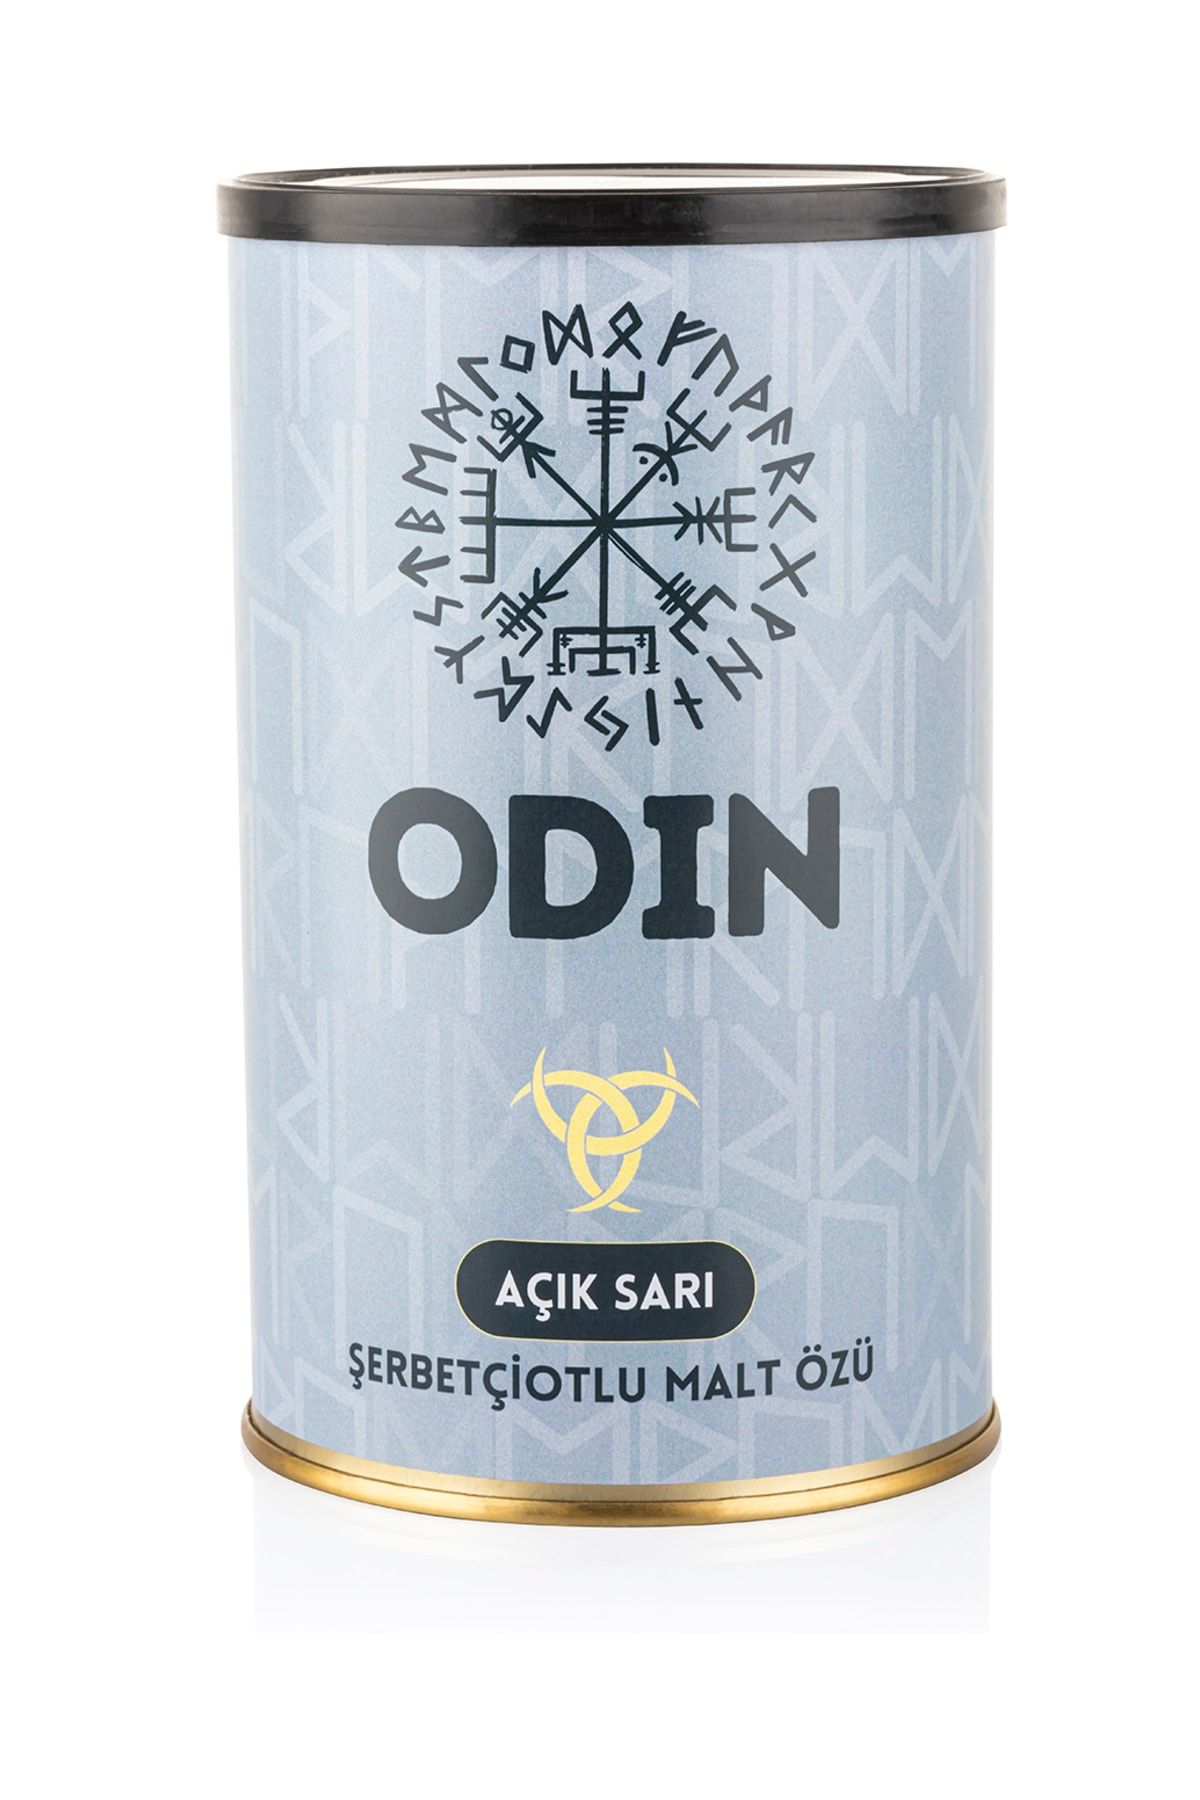 Vinomarket Odin - Lager - Şerbetçiotlu Malt Özü